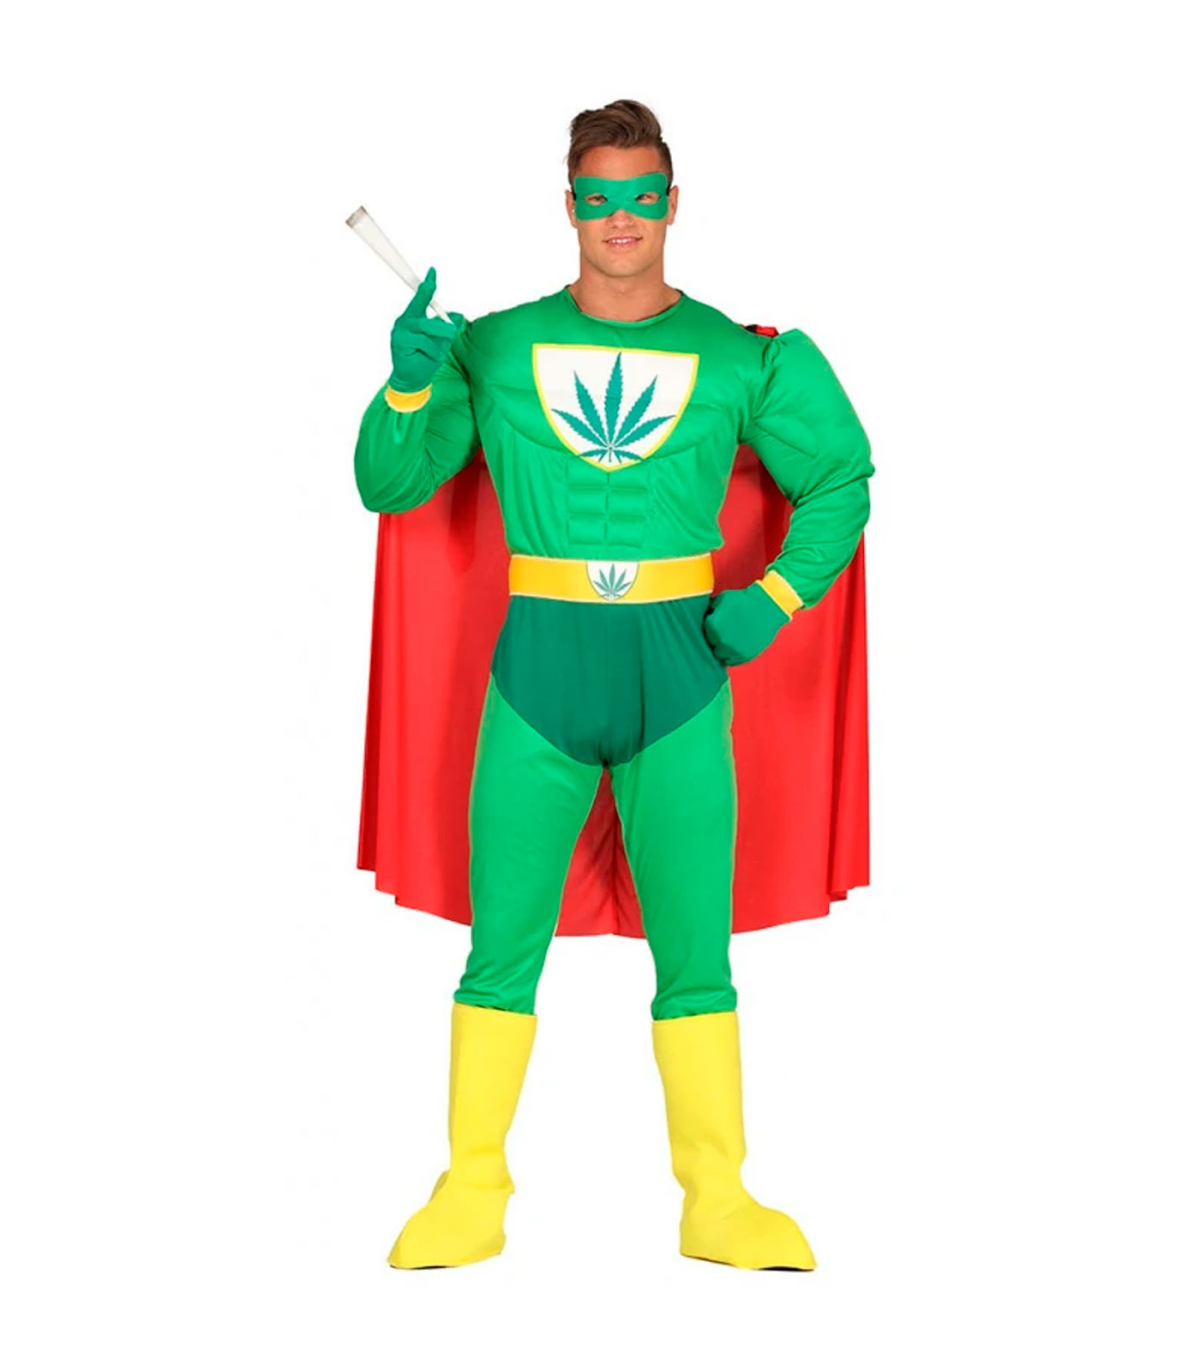 https://tradineur.com/111475-superlarge_default/tradineur--disfraz-de-superheroe-marihuana-para-adulto-poliester-incluye-antifaz-capa-mono-guantes-y-cinturon-atuendo-de-carnava.jpg